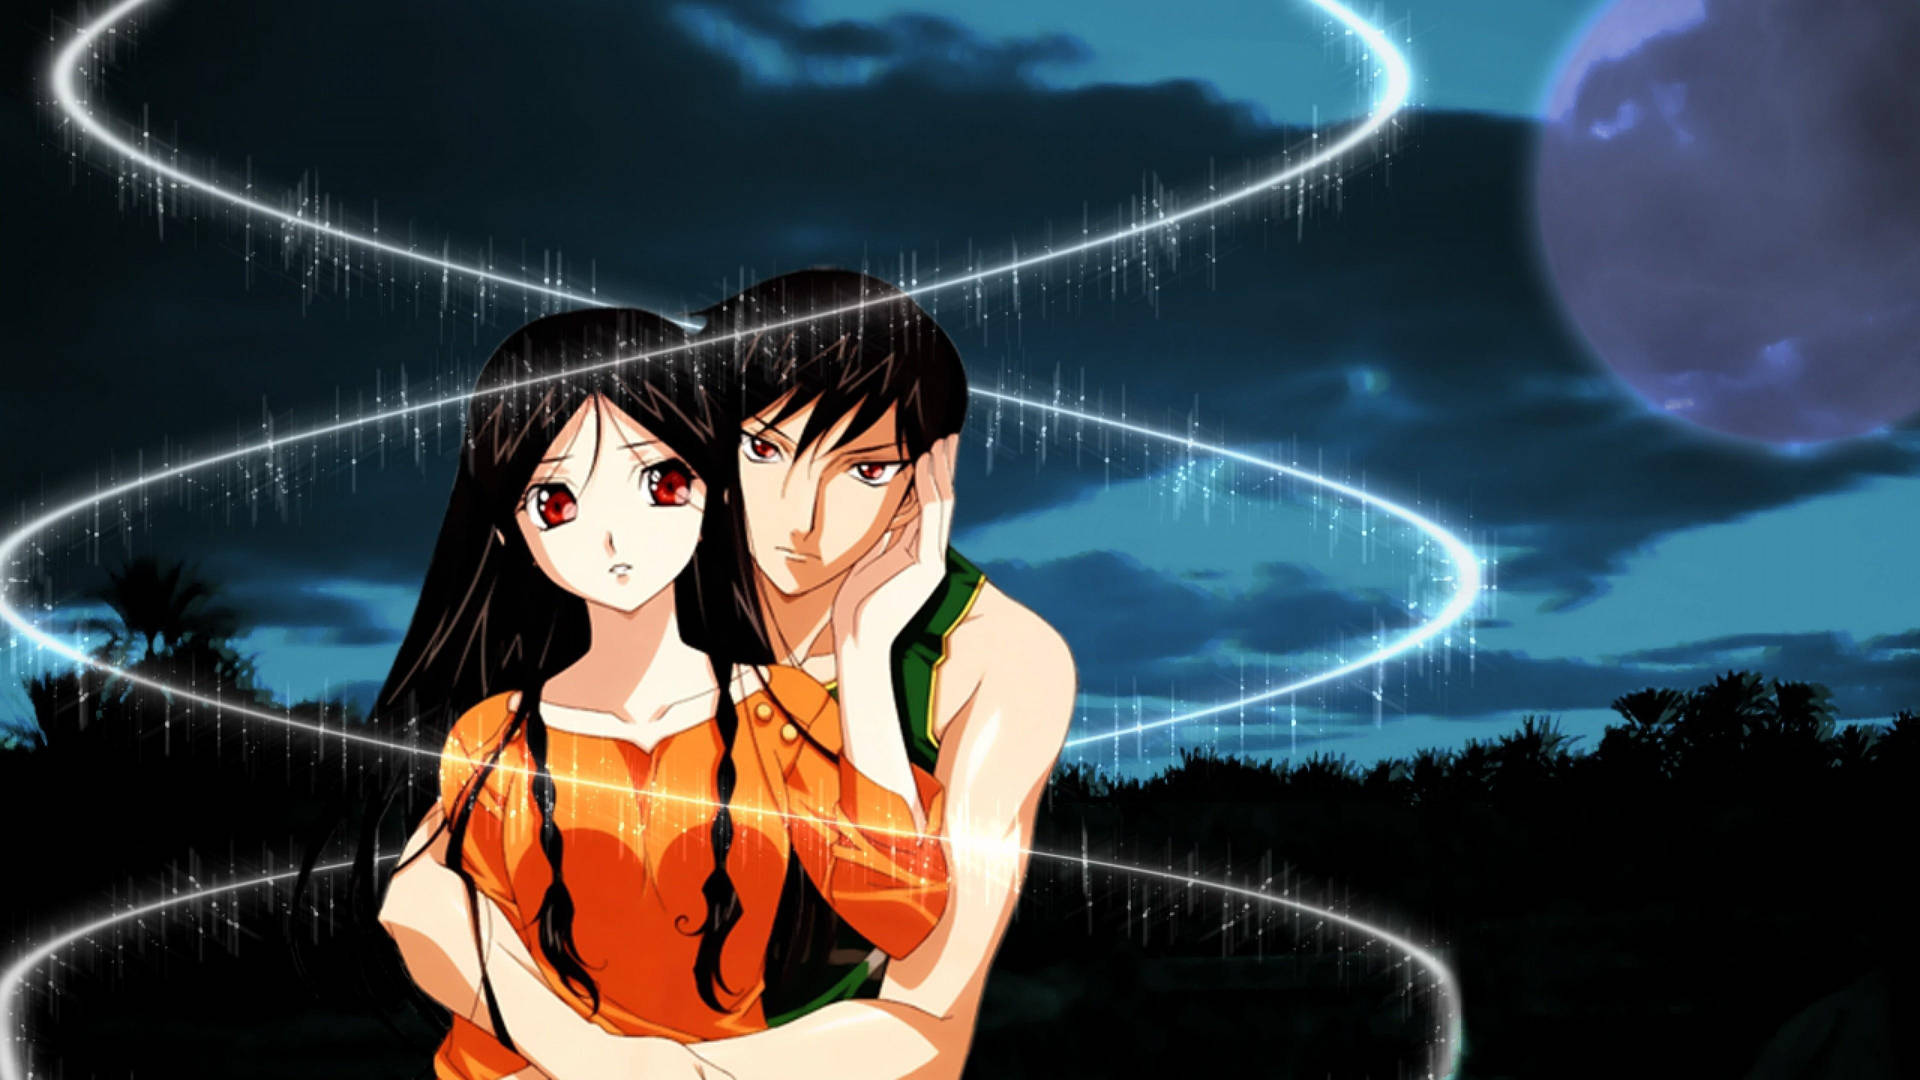 Anime Couple Hug Magic Wallpaper